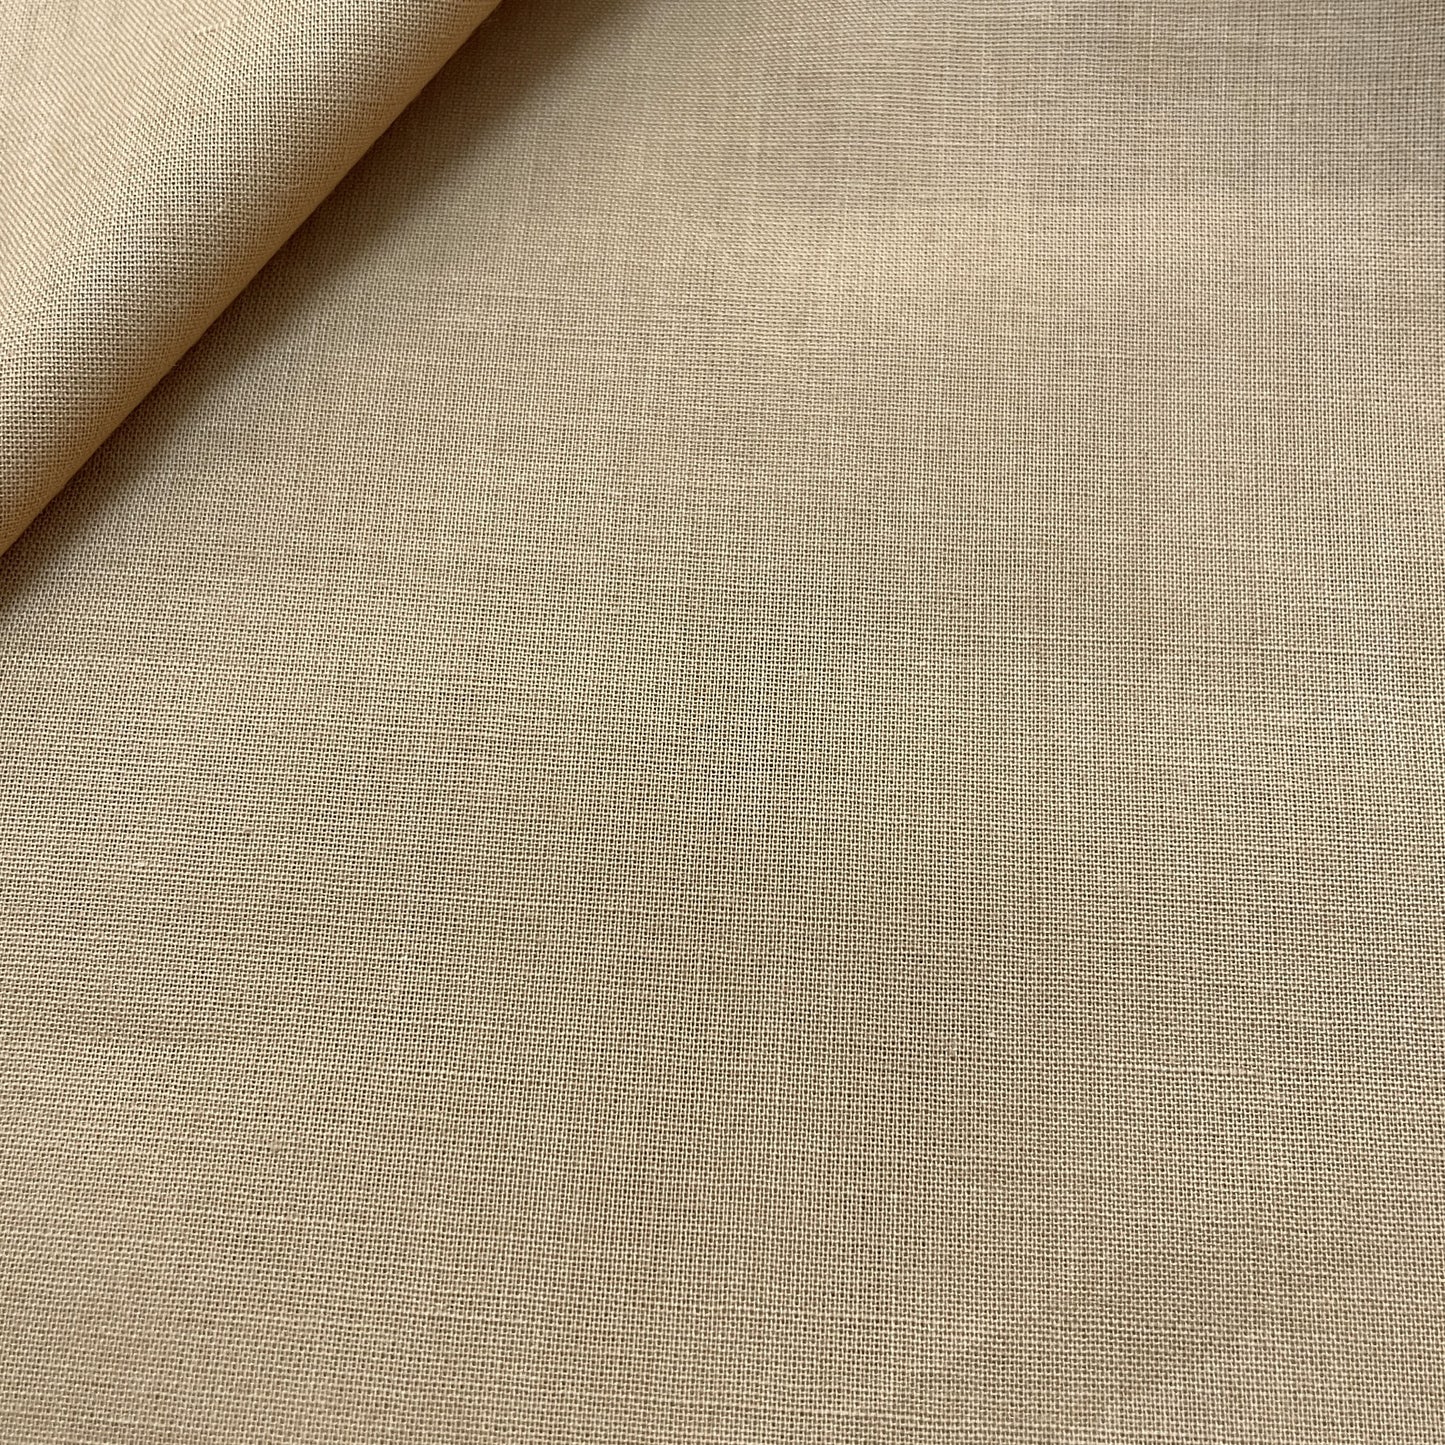 Premium Bone Cream Solid Cotton Mulmul Fabric